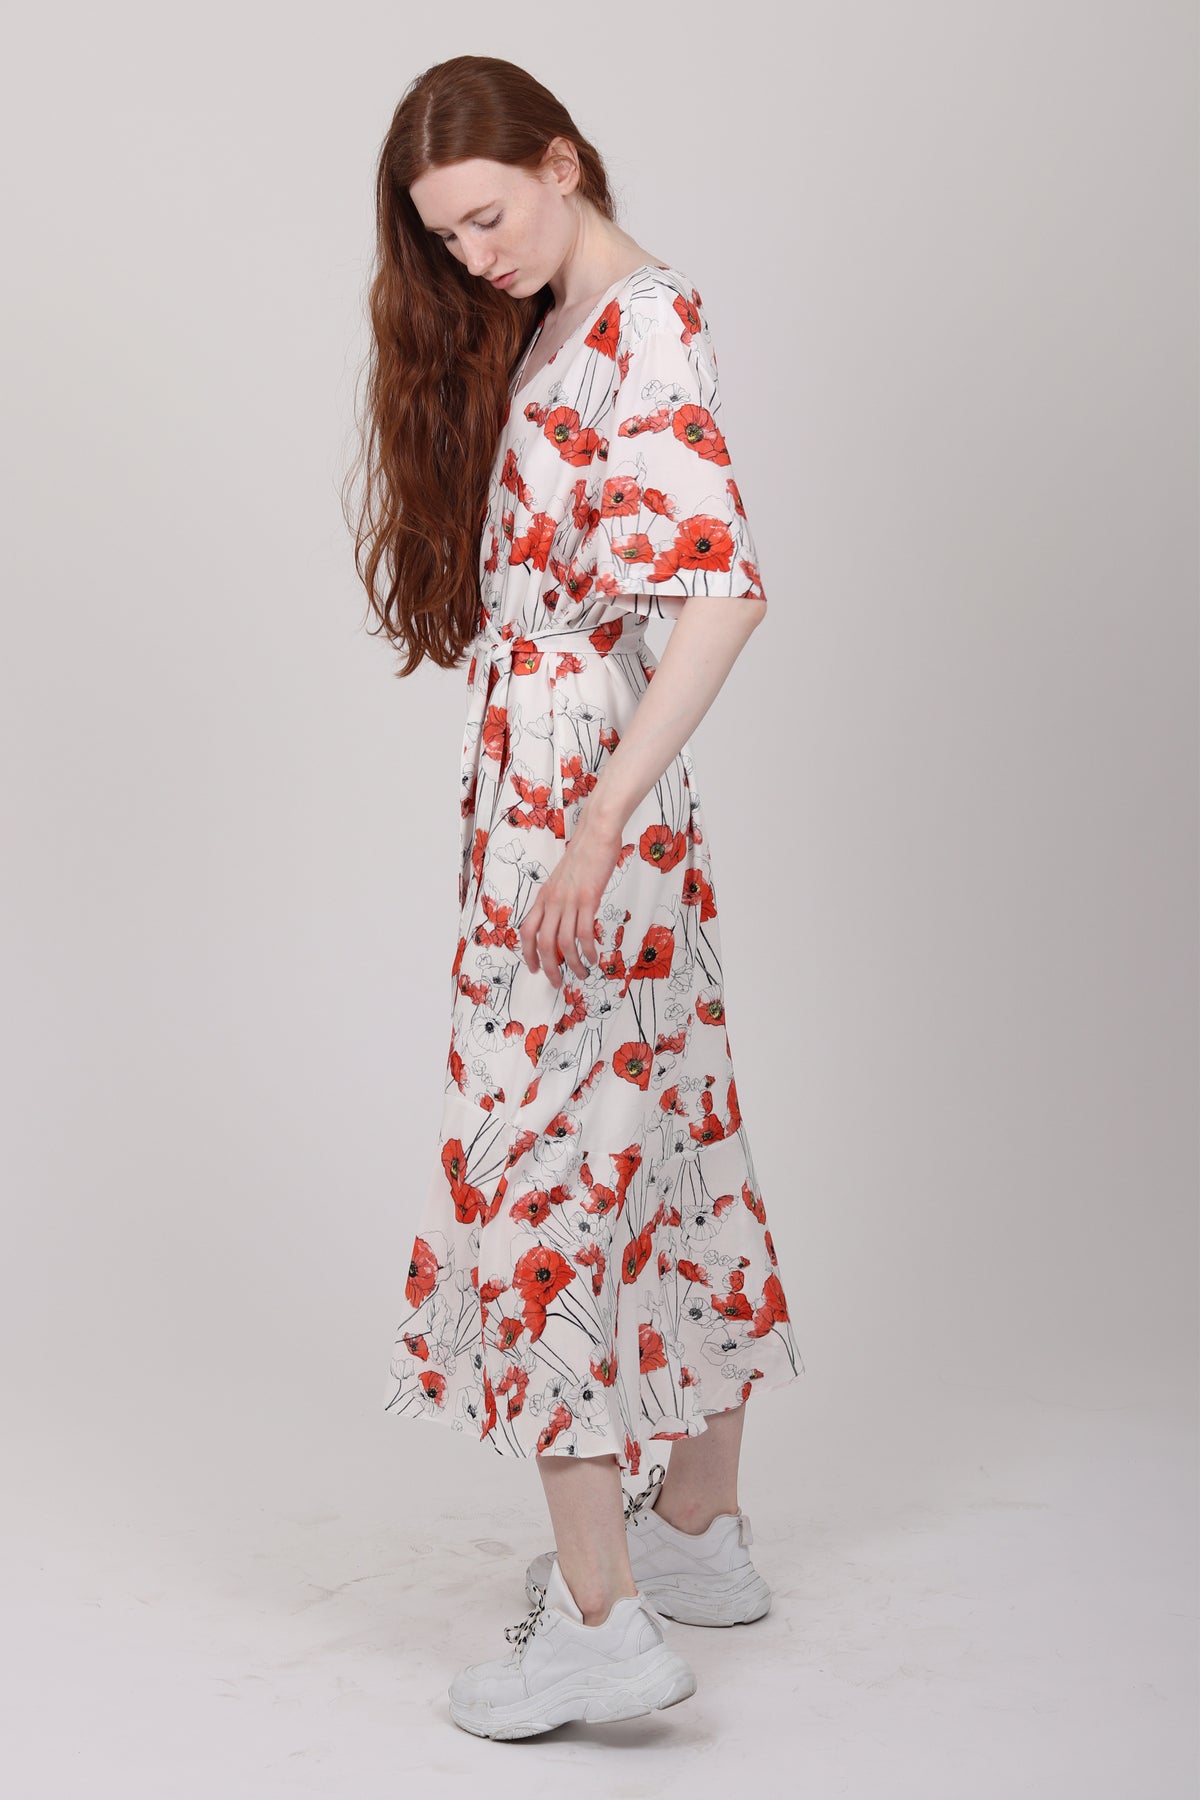 JOYFUL kjole - White w/flower print - Veronica B. Vallenes - Kjoler - VILLOID.no